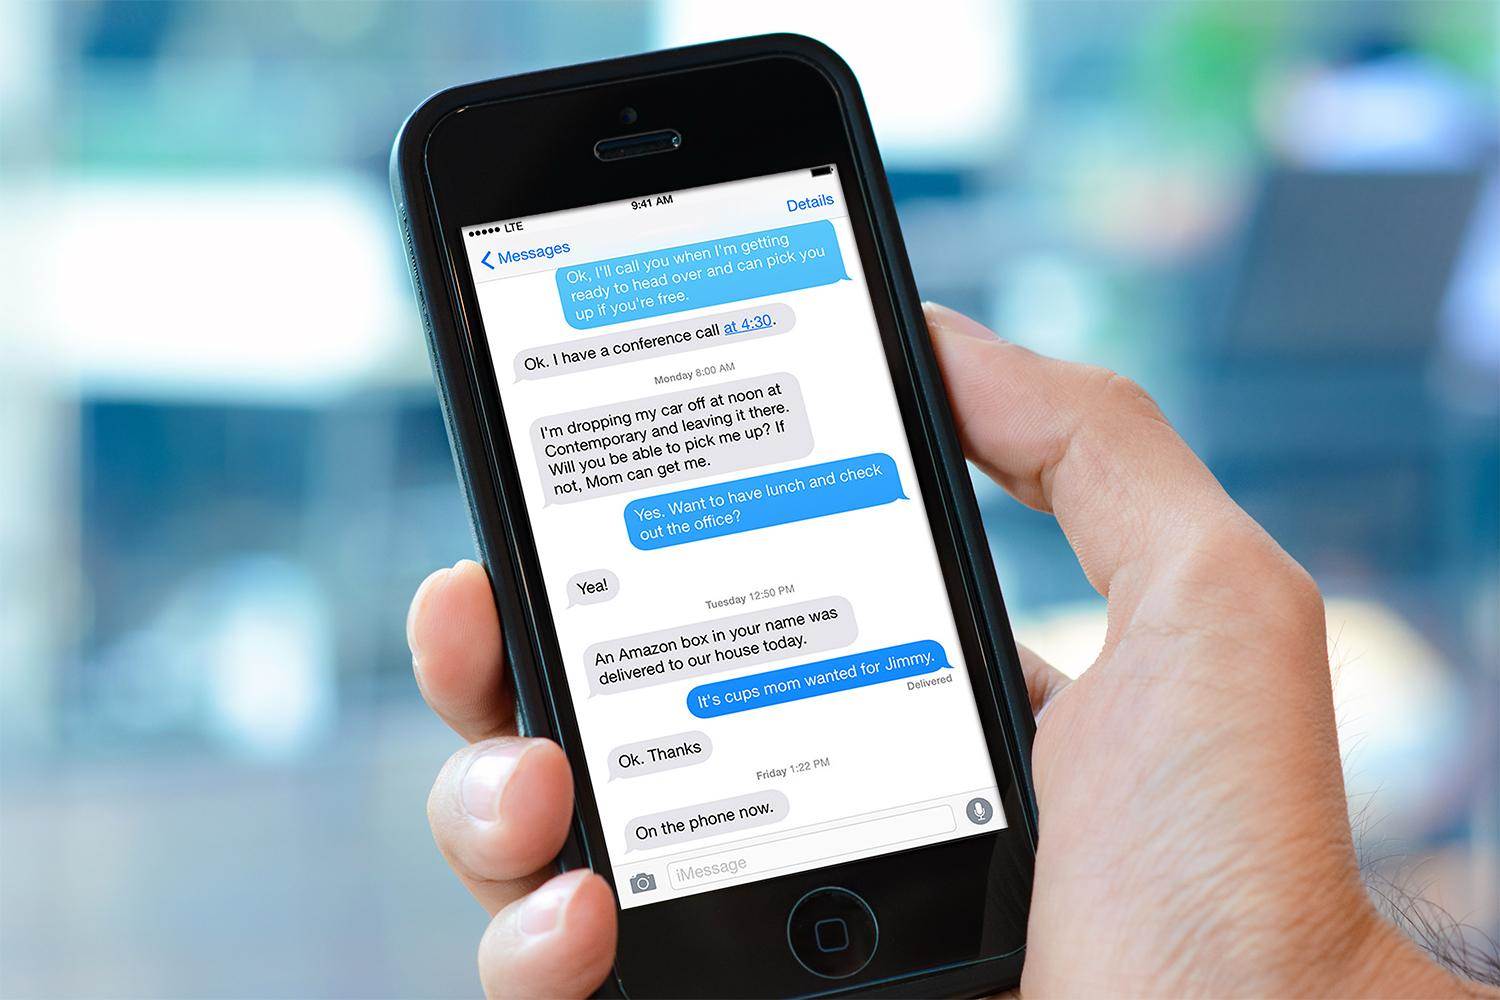 Αλλαγές στον τρόπο συνομιλίας μέσω μηνυμάτων στα iPhone και iPad.